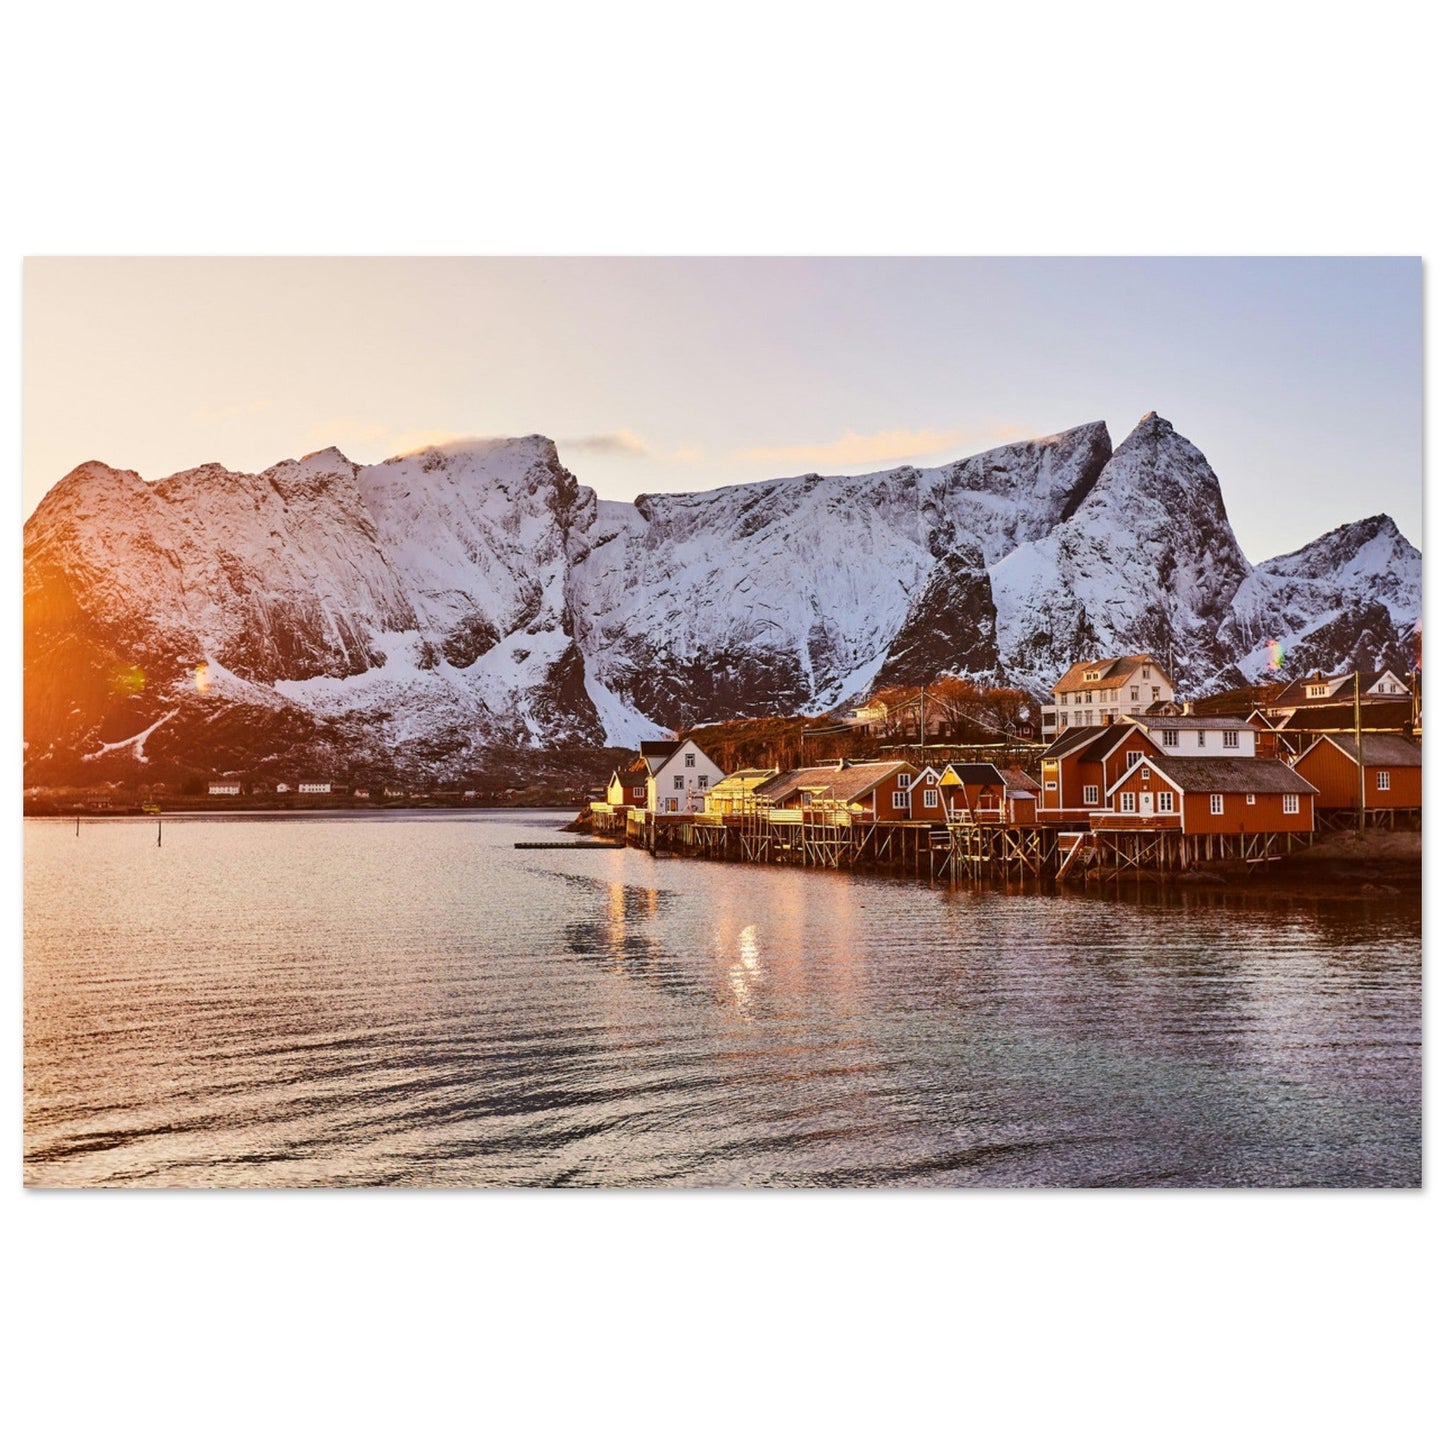 Vente Photo d'un coucher de soleil sur les Îles Lofoten, Norvège #1 - Tableau photo paysage